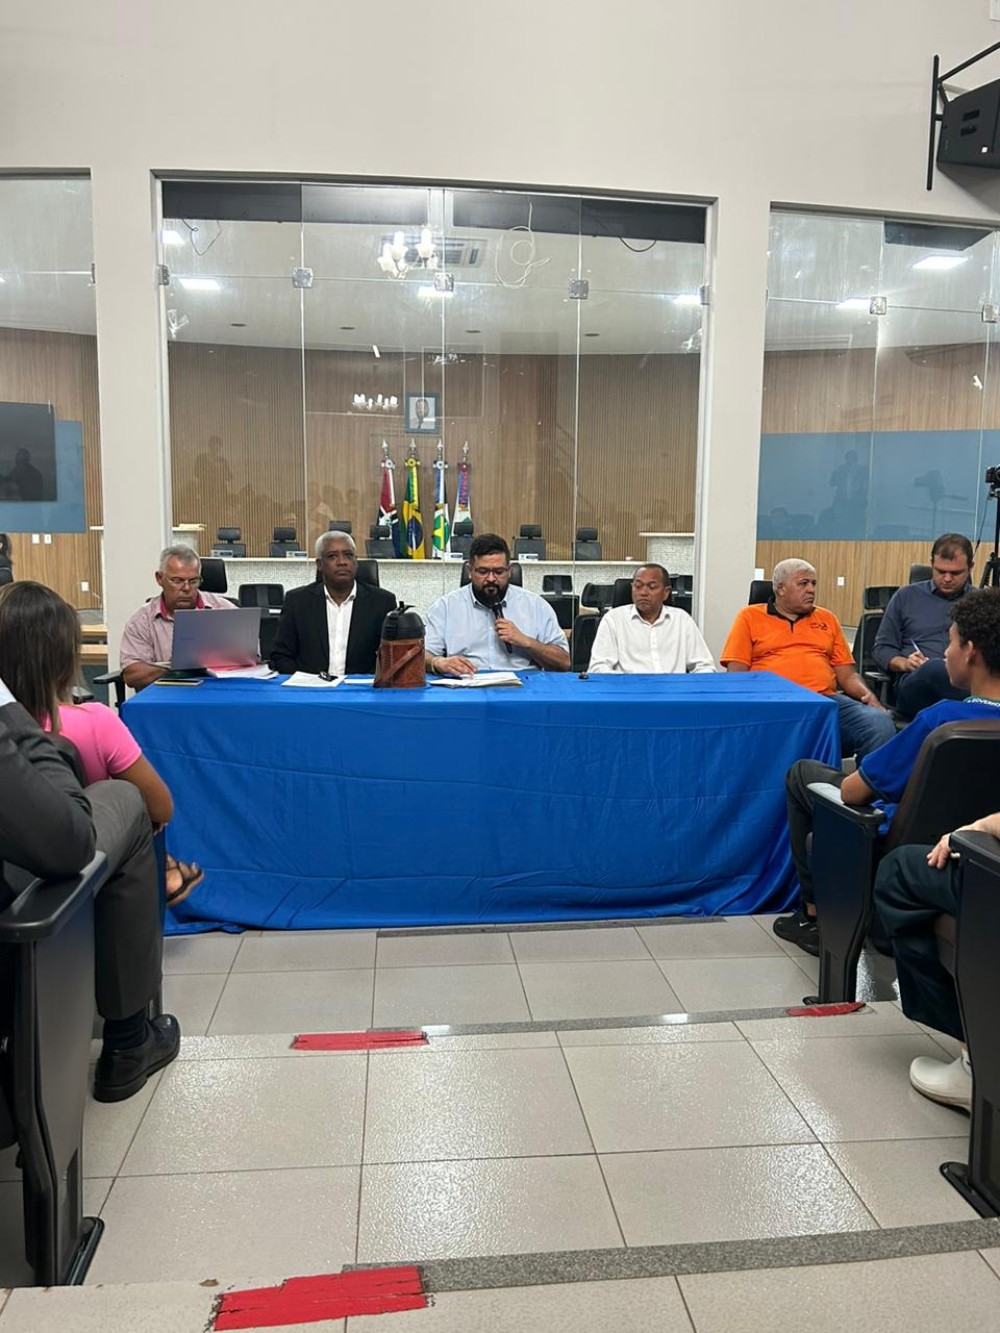 Câmara de vereadores e sociedade civil organizada devem barrar obra da Rumo em Rondonópolis